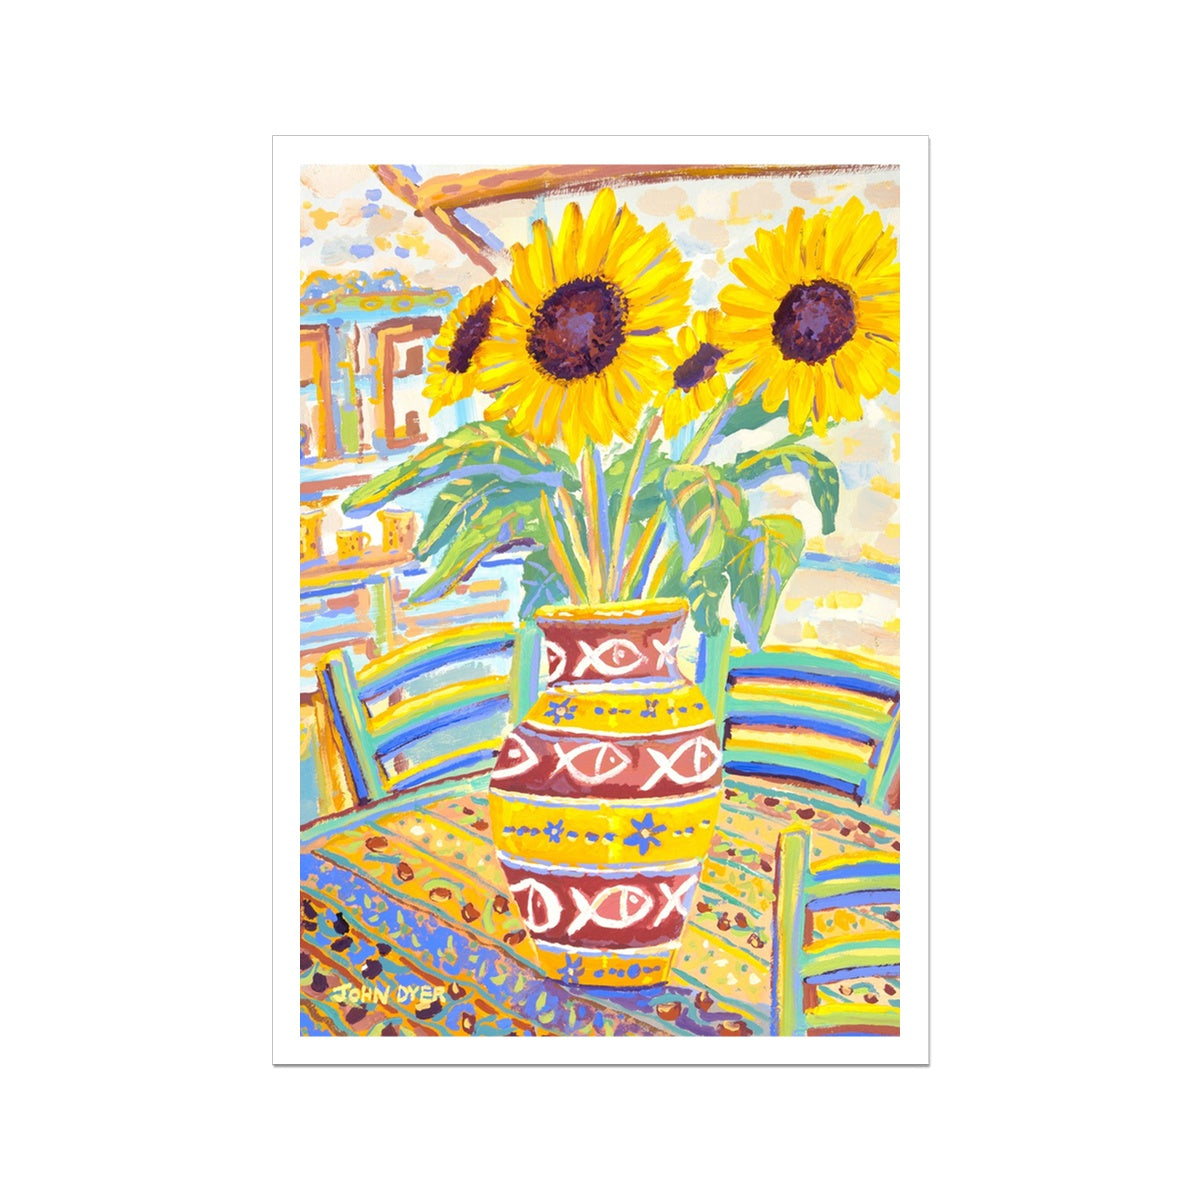 John Dyer Fine Art Print. Open Edition French Art Print. 'Flowers Full of Sunshine' Sunflower Still-Life. French Art Gallery